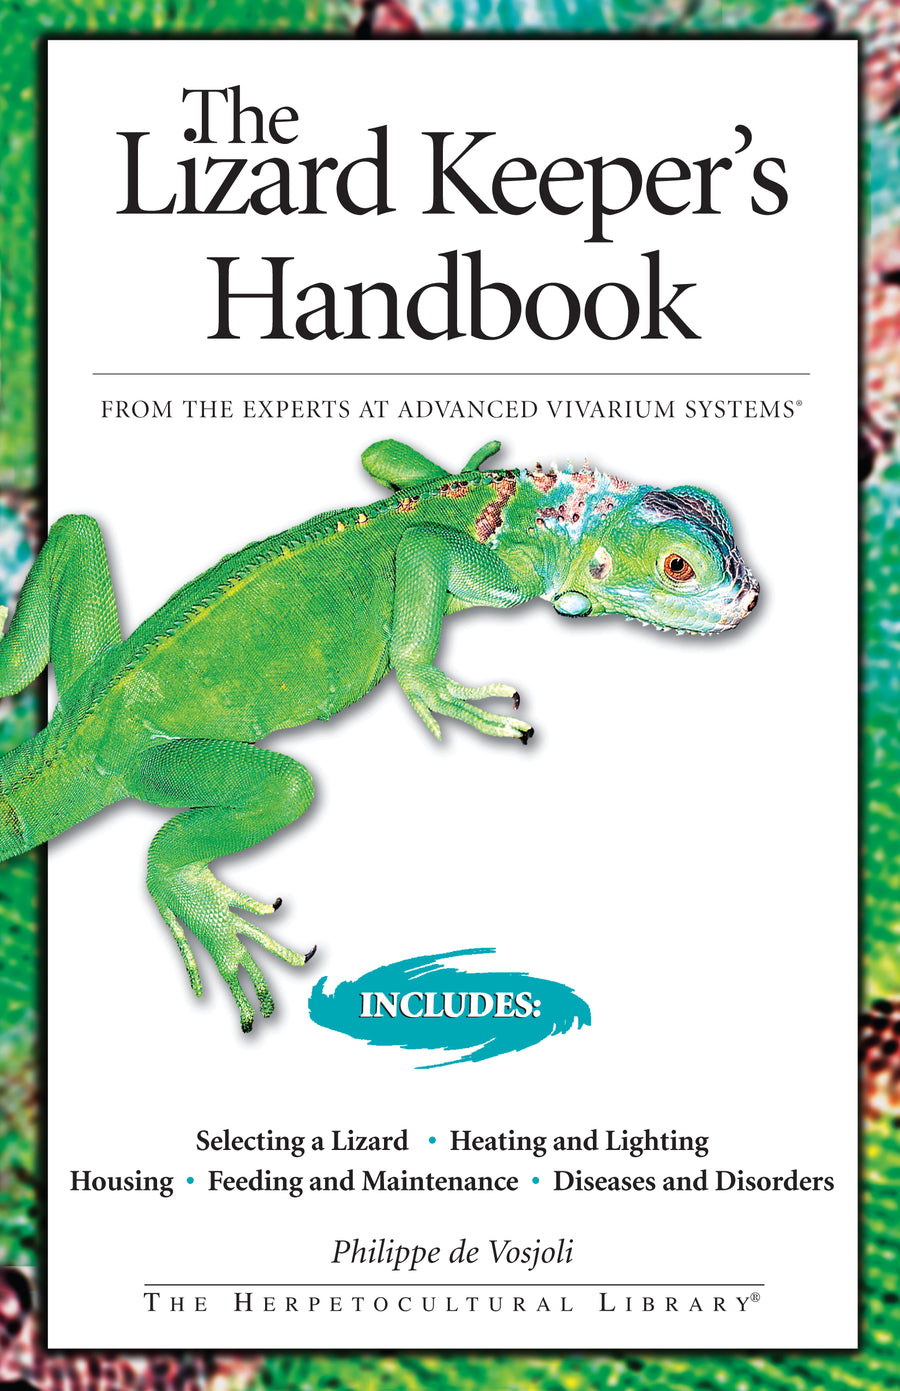 The Lizard Keeper's Handbook Paperback Publication: 2007/11/06